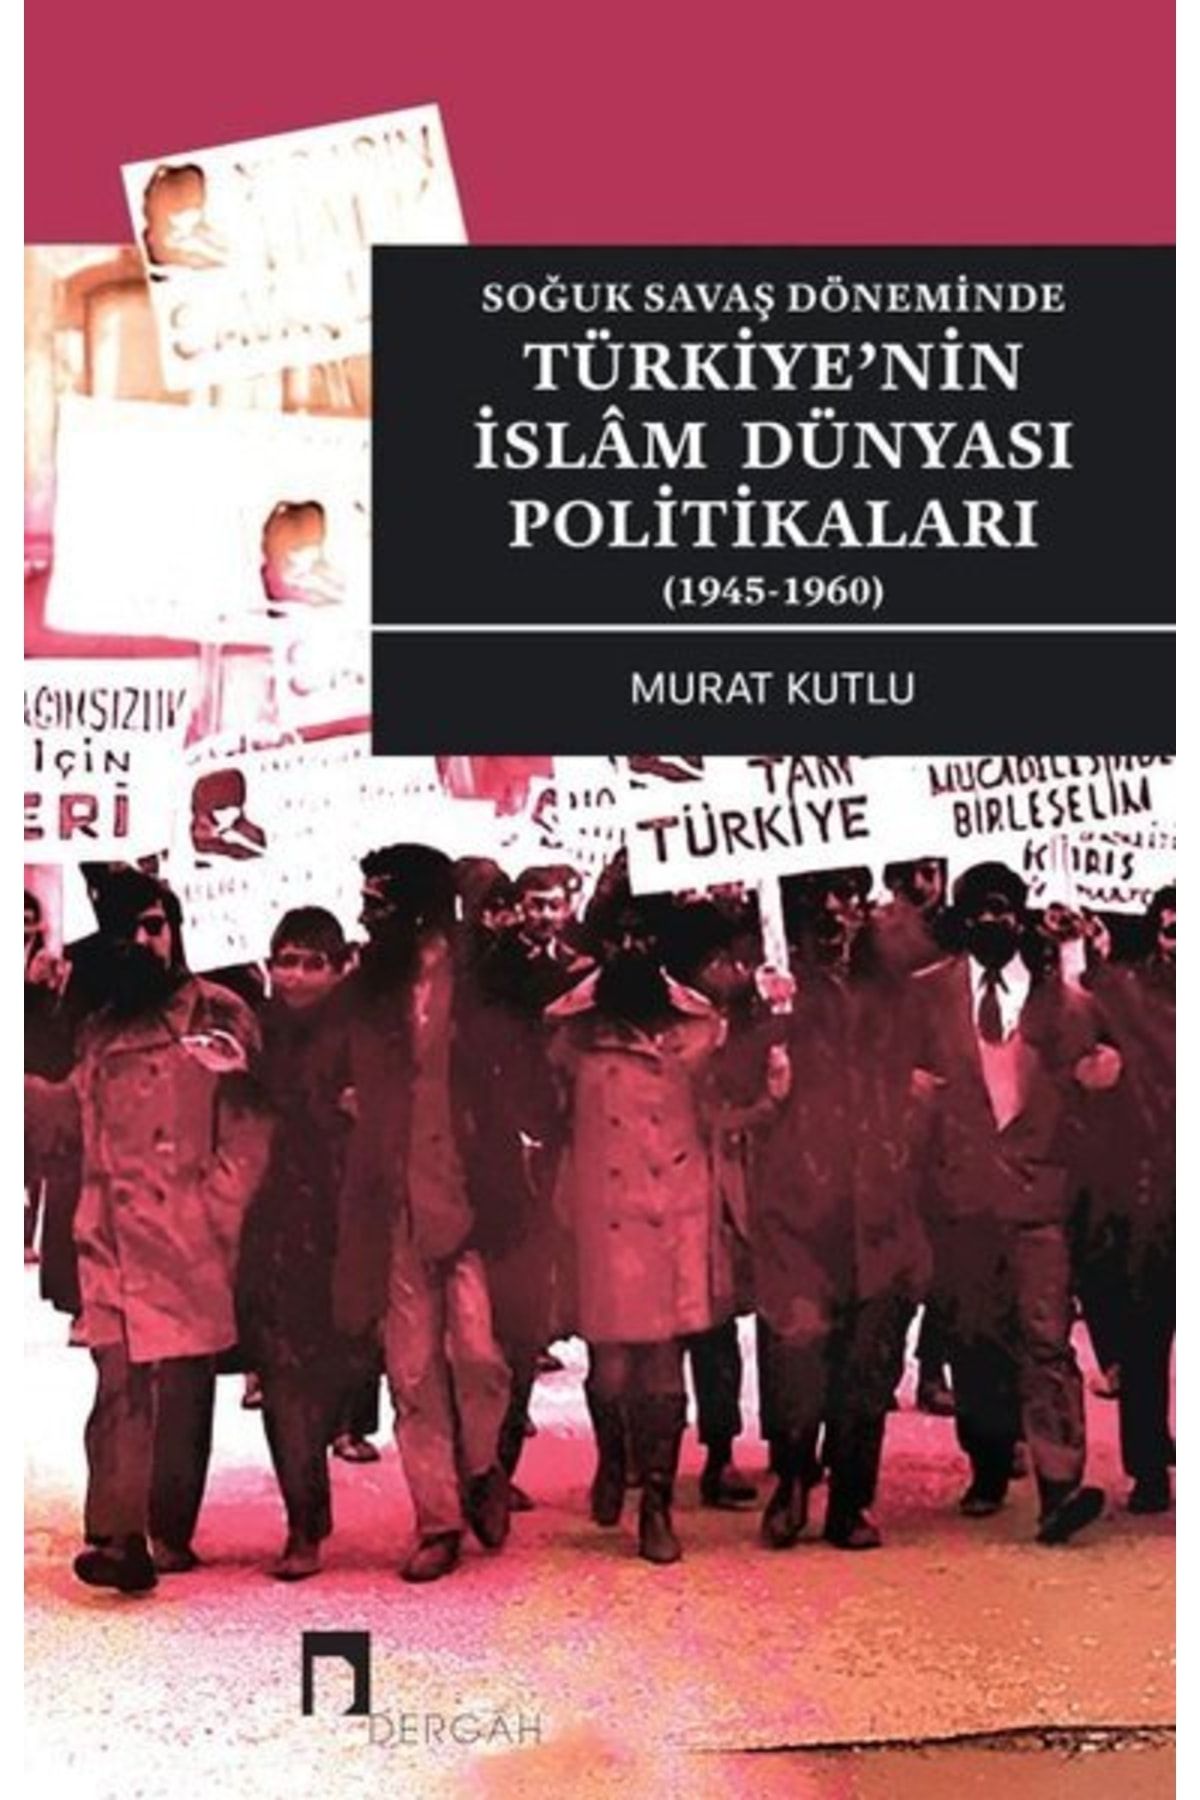 Dergah Yayınları Türkiye'nin Islam Dünyası Politikaları - Soğuk Savaş Döneminde 1945 - 1960